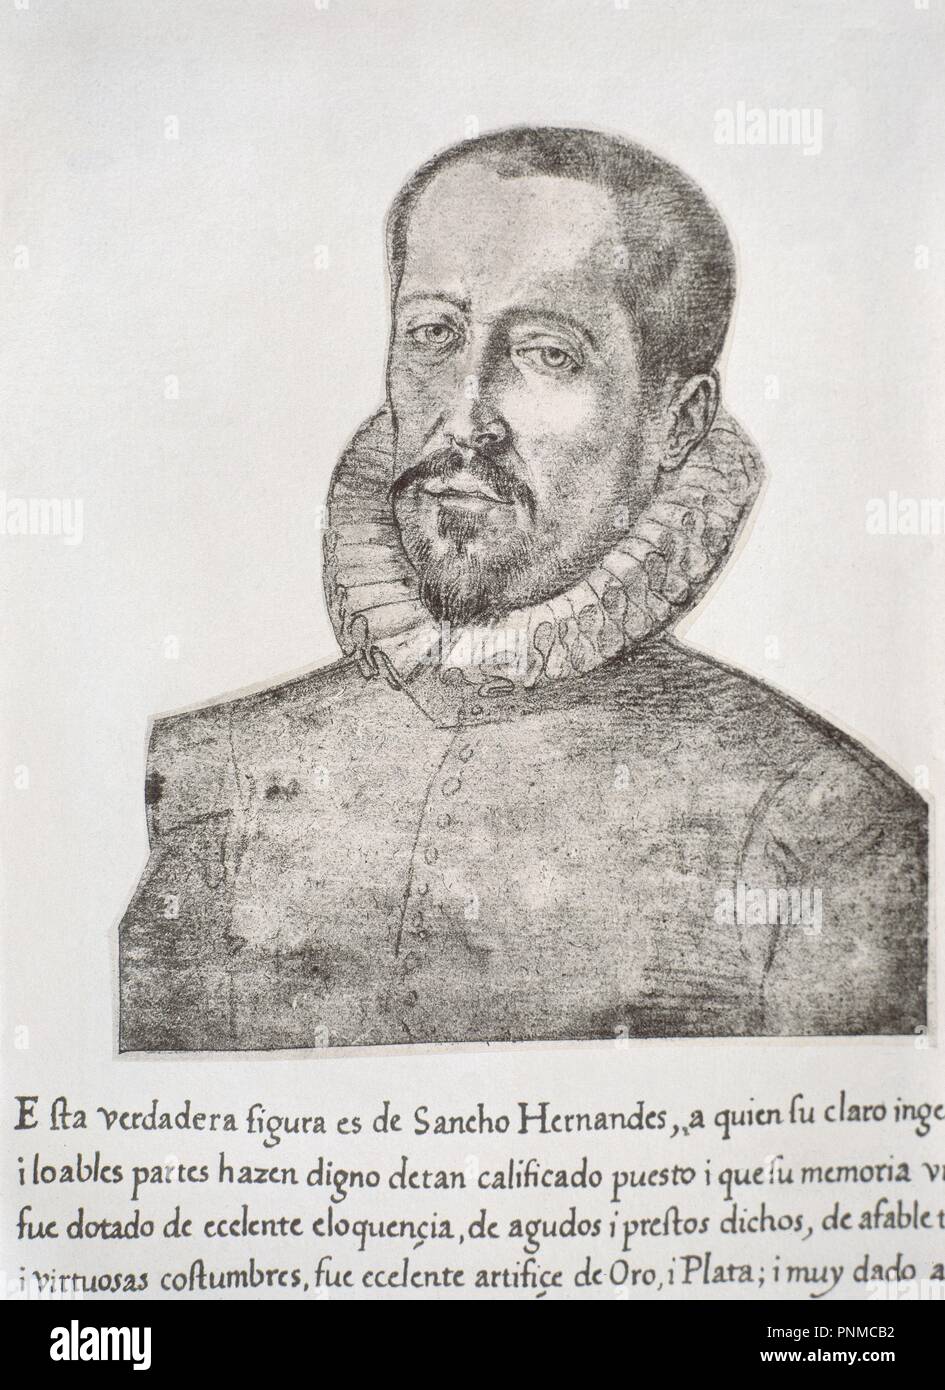 SANCHO HERNANDEZ - LIBRO DE RETRATOS DE ILUSTRES Y MEMORABLES VARONES - 1599. Author: PACHECO, FRANCISCO. Location: BIBLIOTECA NACIONAL-COLECCION. MADRID. SPAIN. Stock Photo